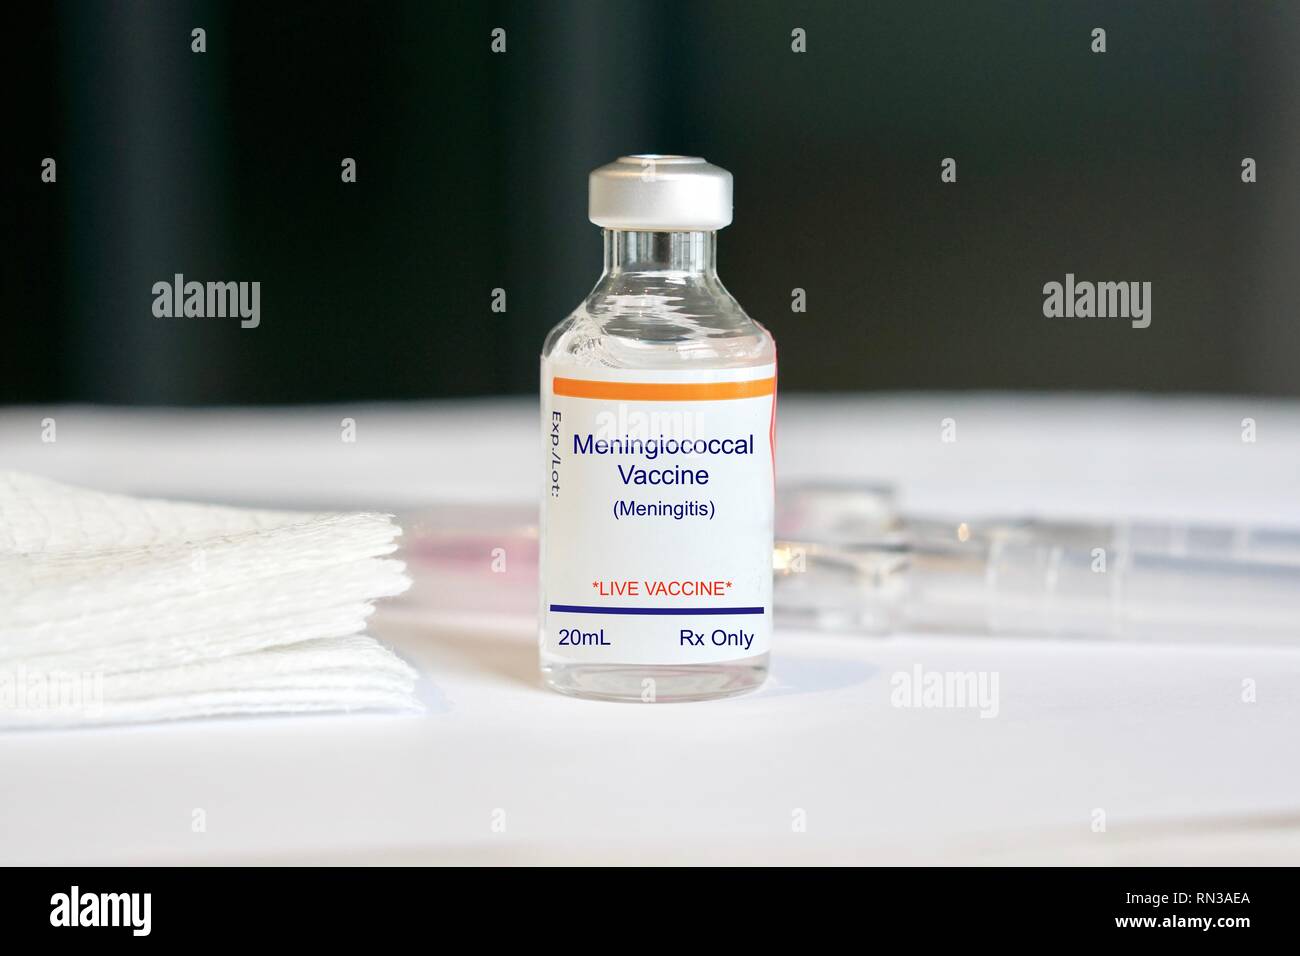 Le vaccin contre le méningocoque pour la méningite dans une fiole de verre dans un cadre médical Banque D'Images